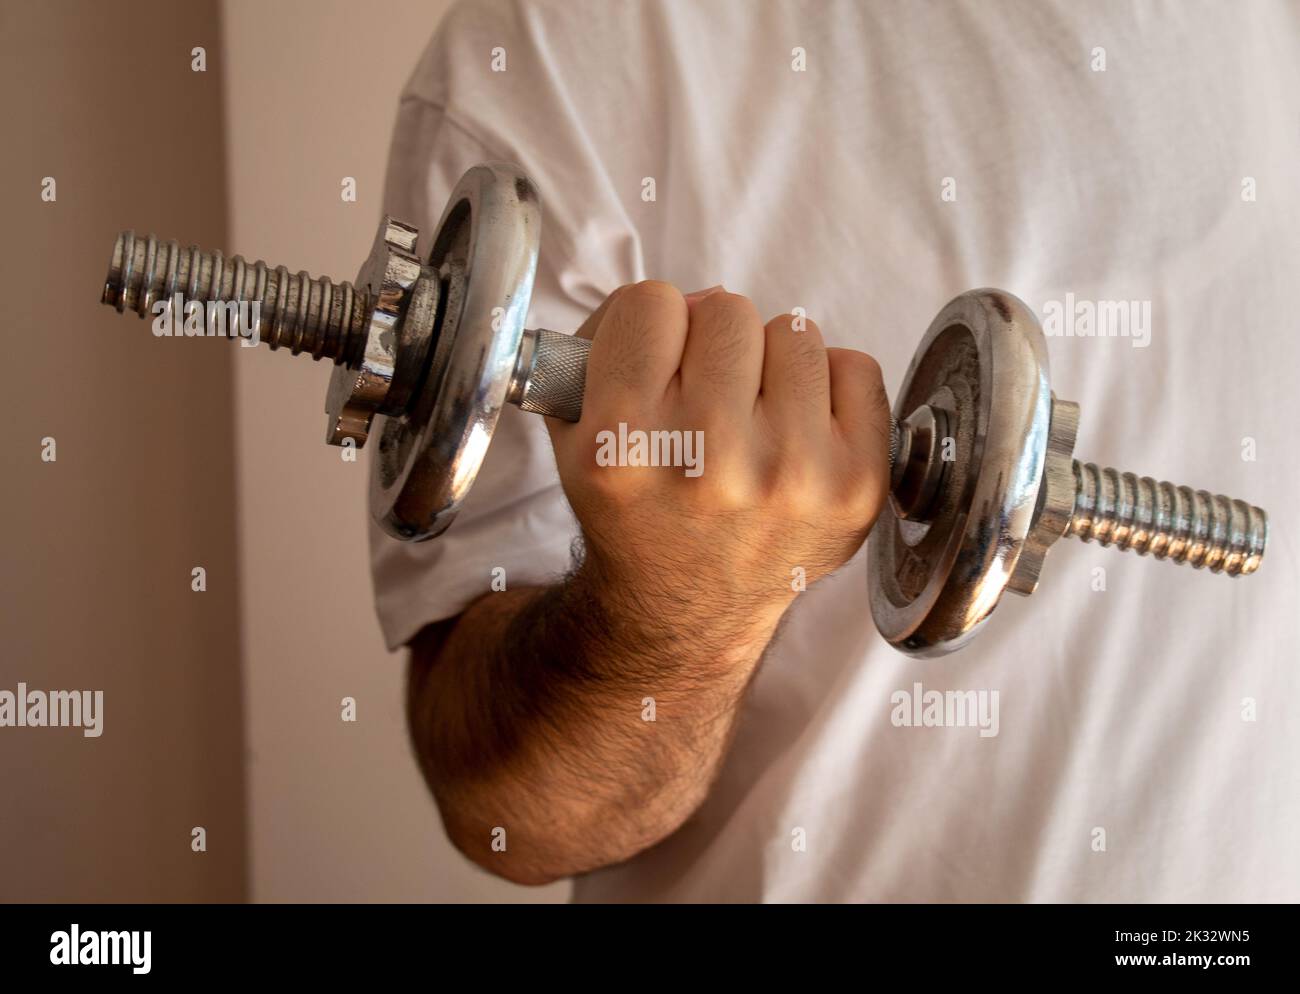 Eine Person Arm halten heben Hantel Motivation Anstrengung isoliert an der Wand, selektive Fokus Stockfoto